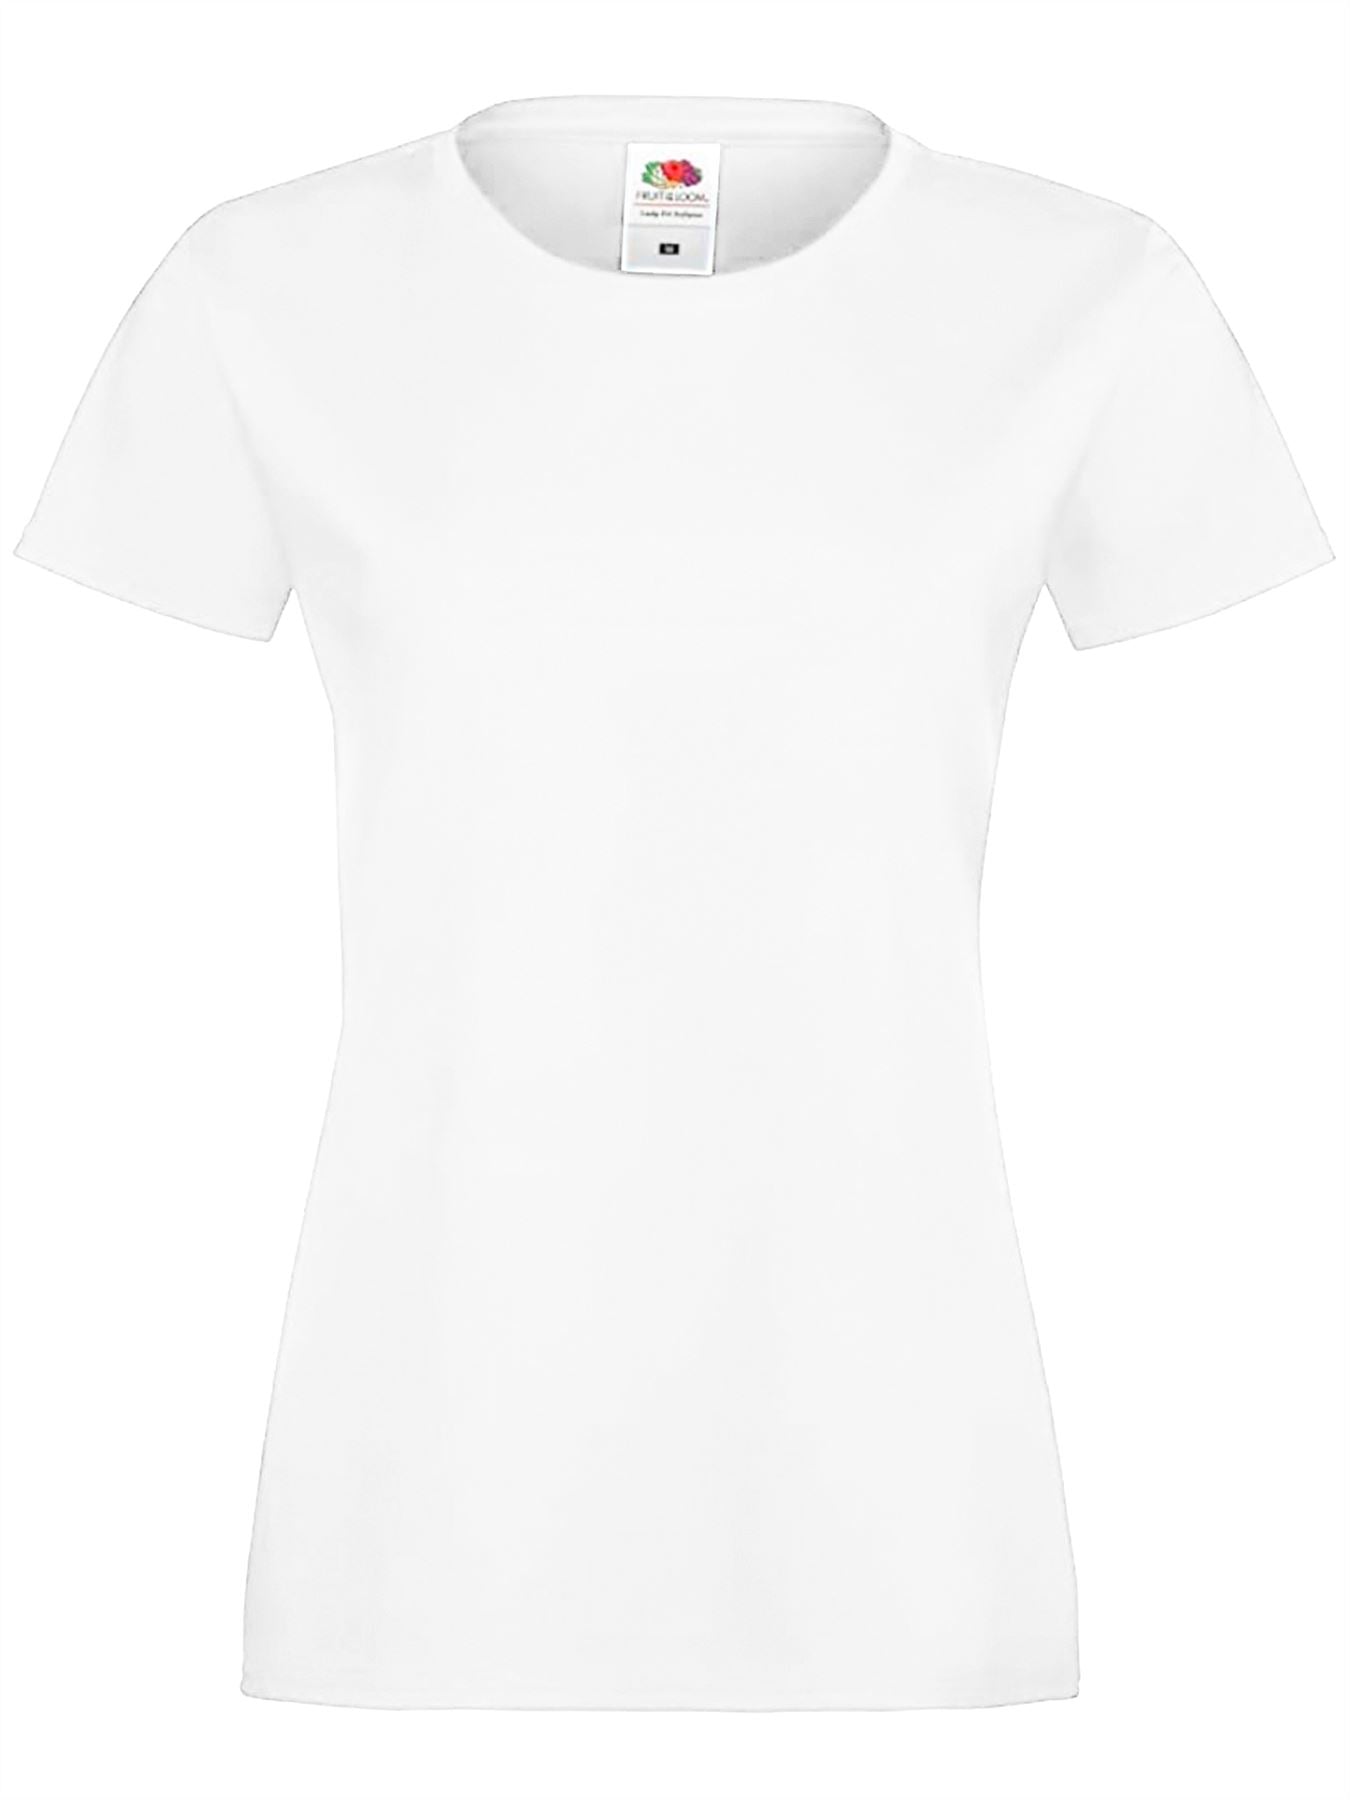 Womens Basic T-shirt